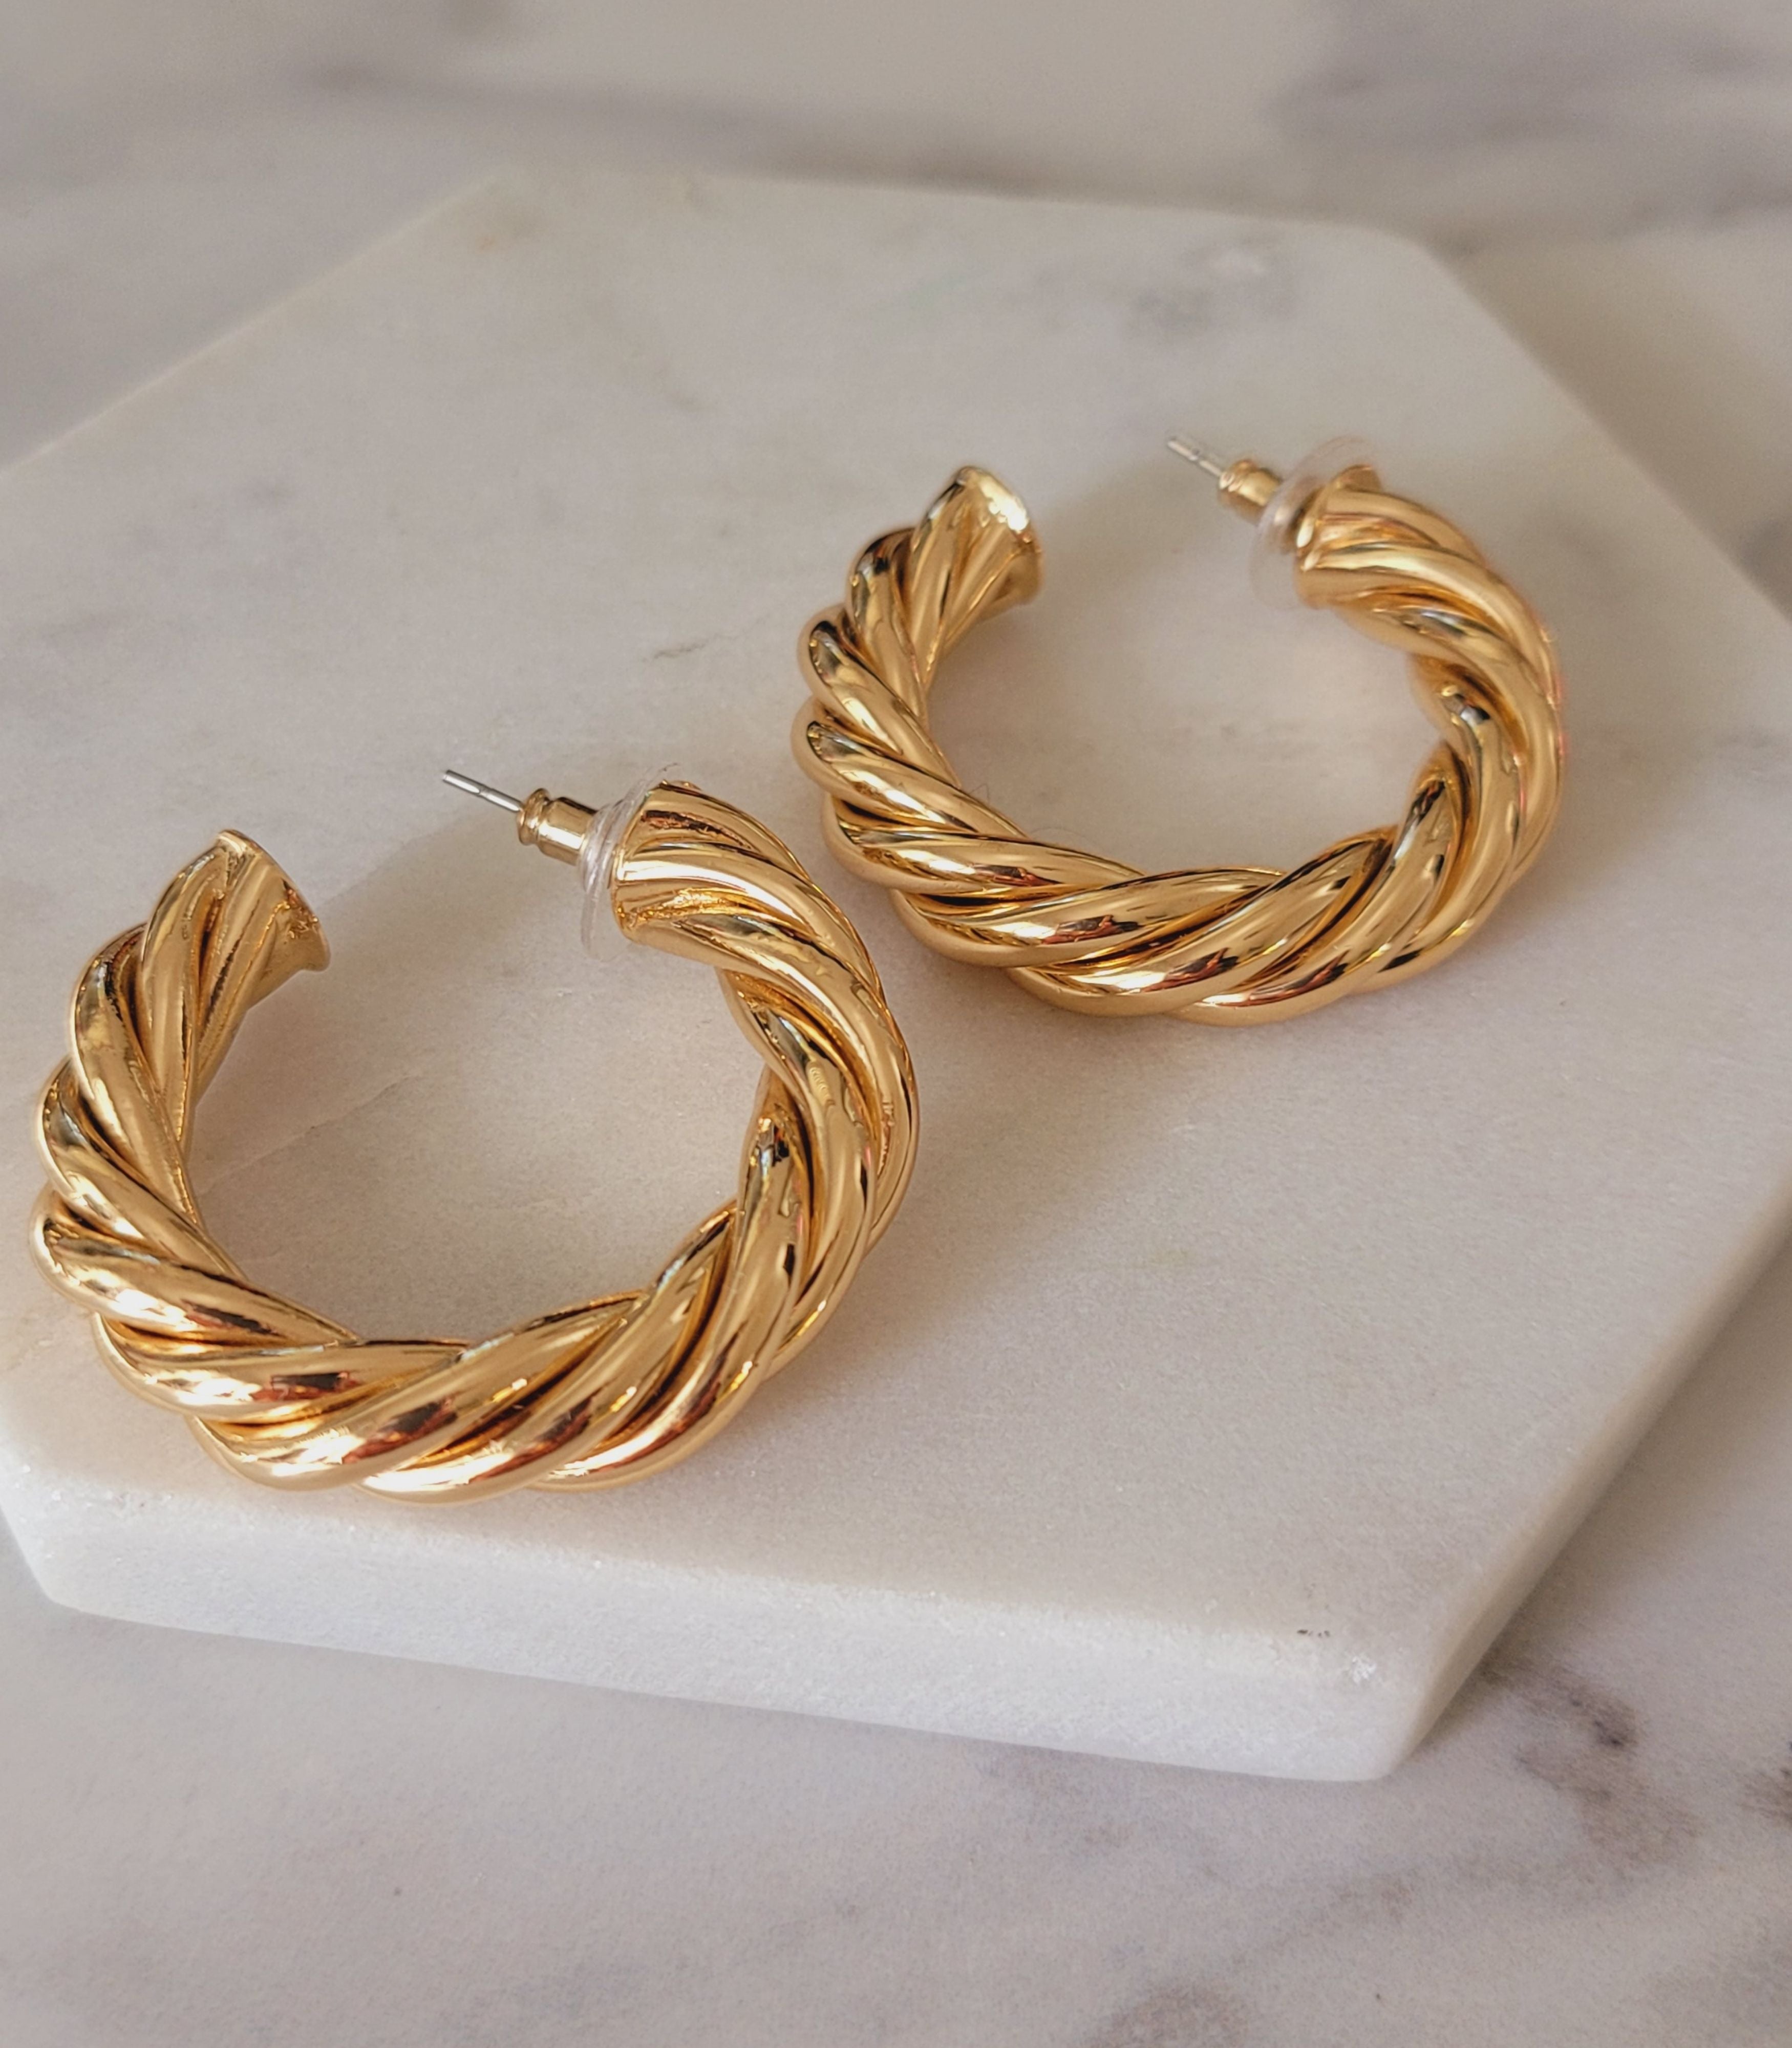 Holly hoops 14k gold filled croissant hoop earrings